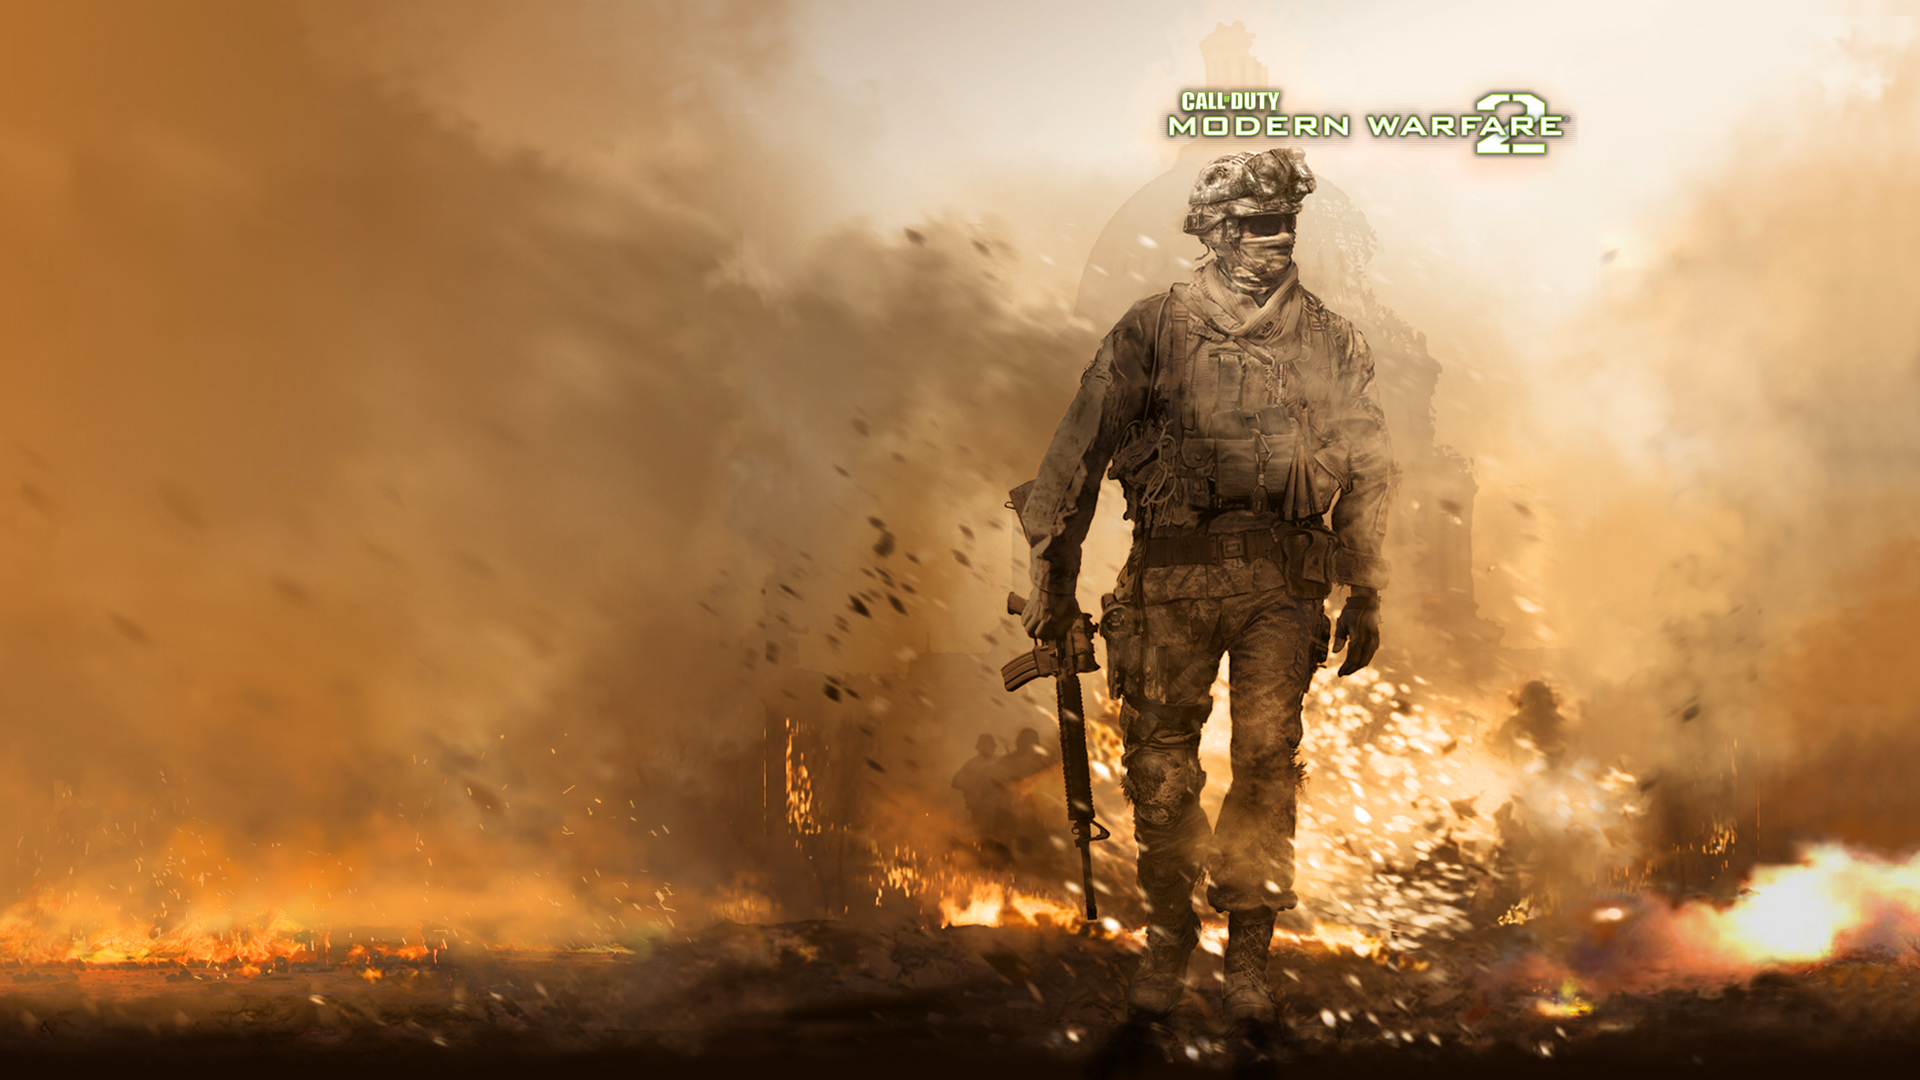 Modern Warfare Wallpaper Web Makeup Nxebg